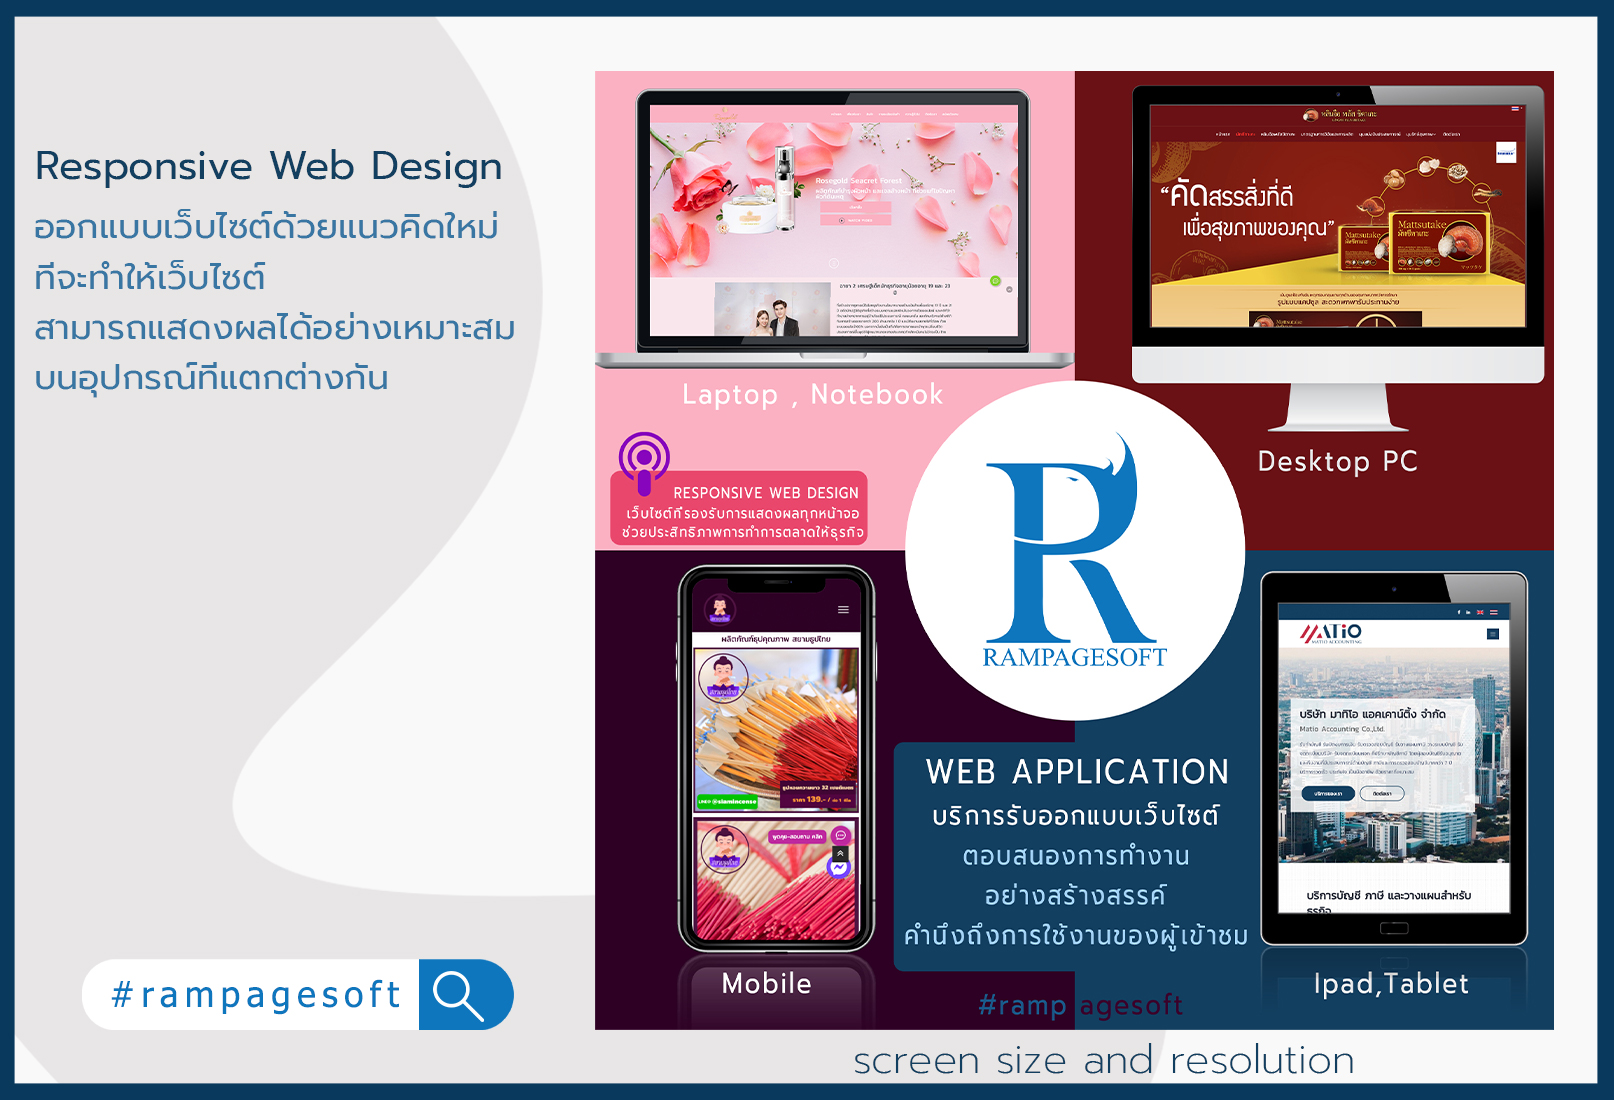 รับทําเว็บไซต์ เว็บขยายสายงาน Responsive Web Design | TTT-WEBSITE 